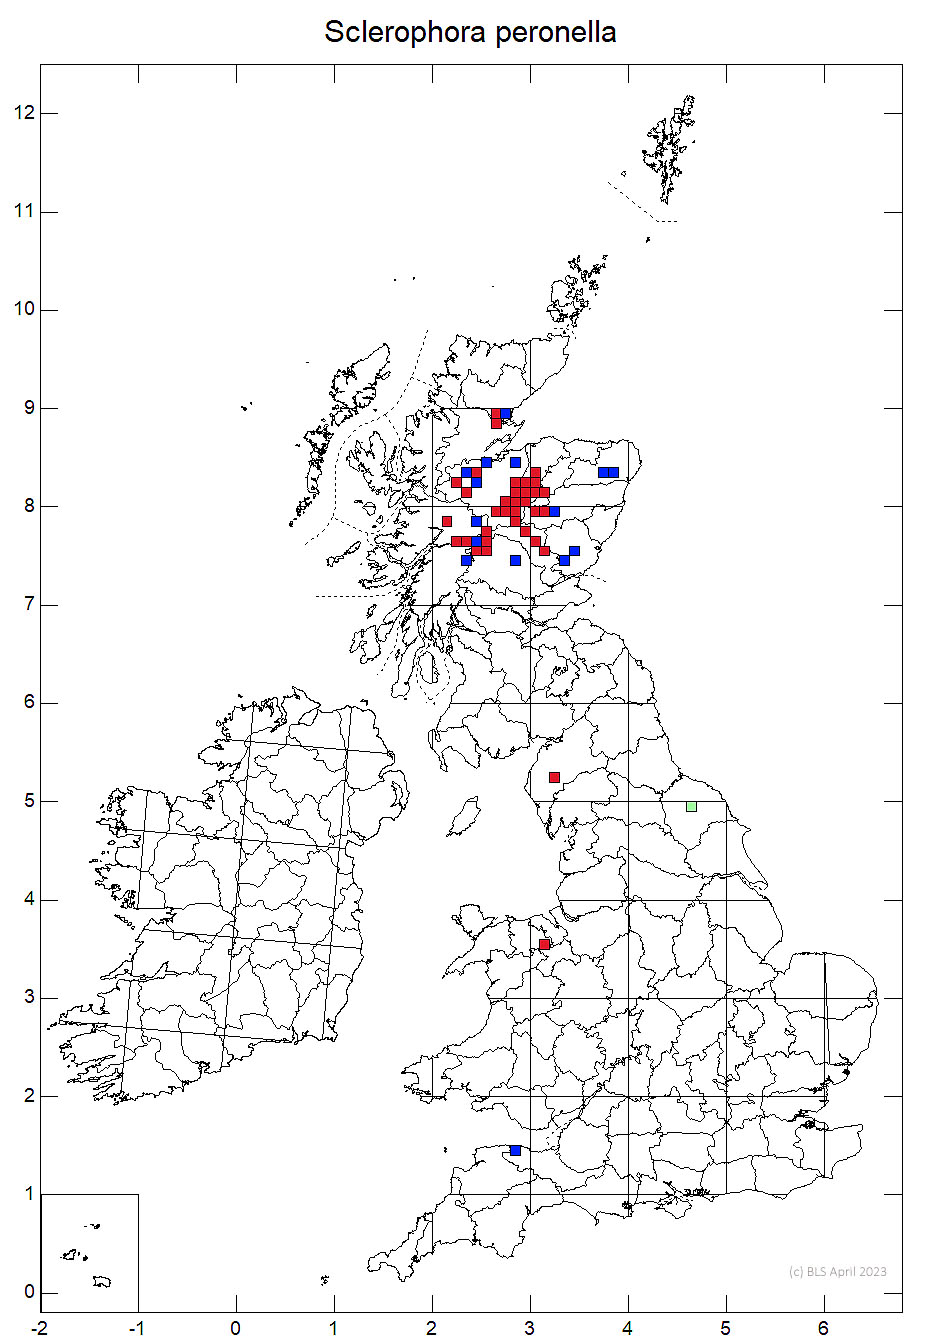 Sclerophora peronella 10km sq distribution map